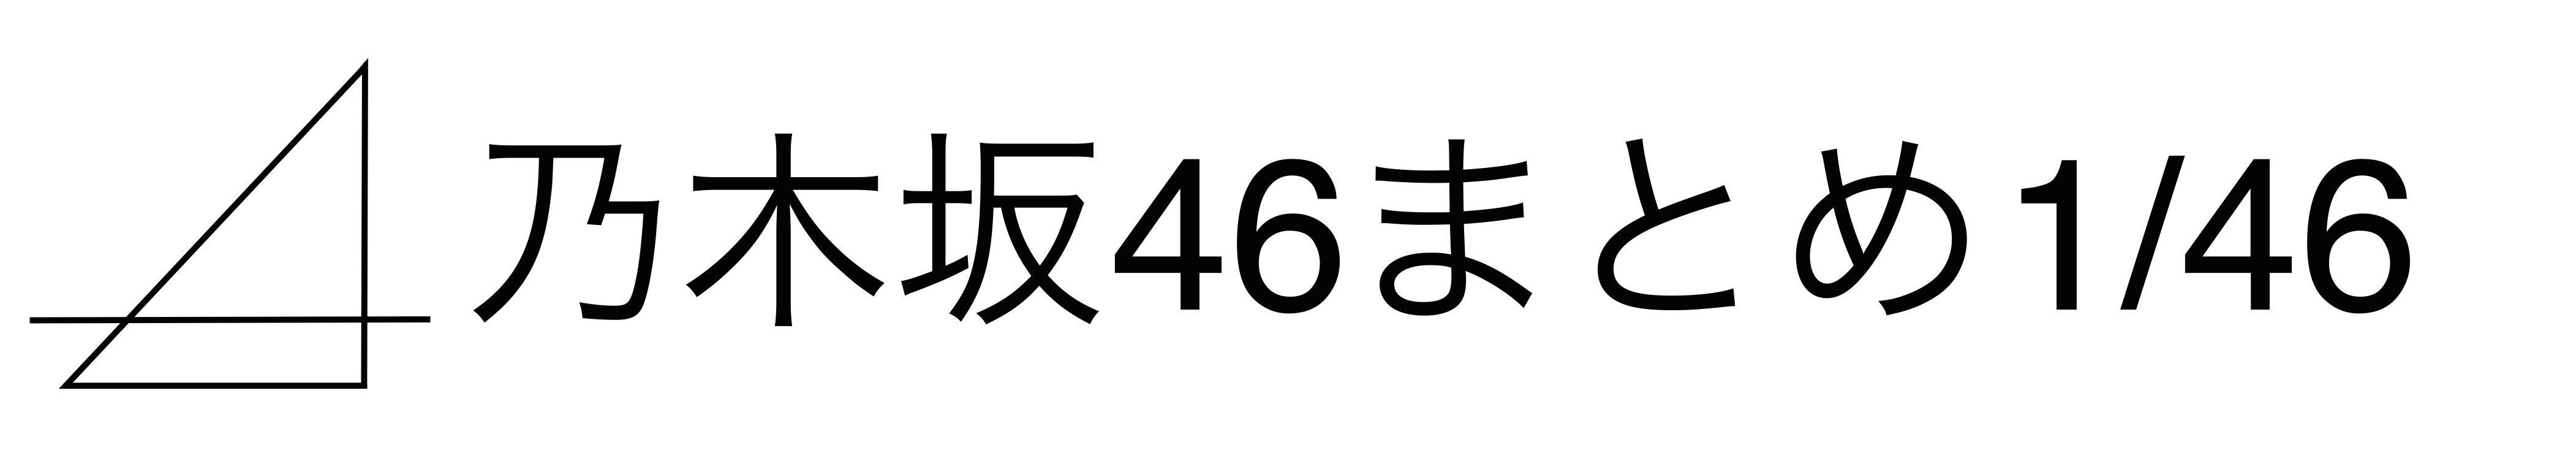 乃木坂46まとめ 1 46